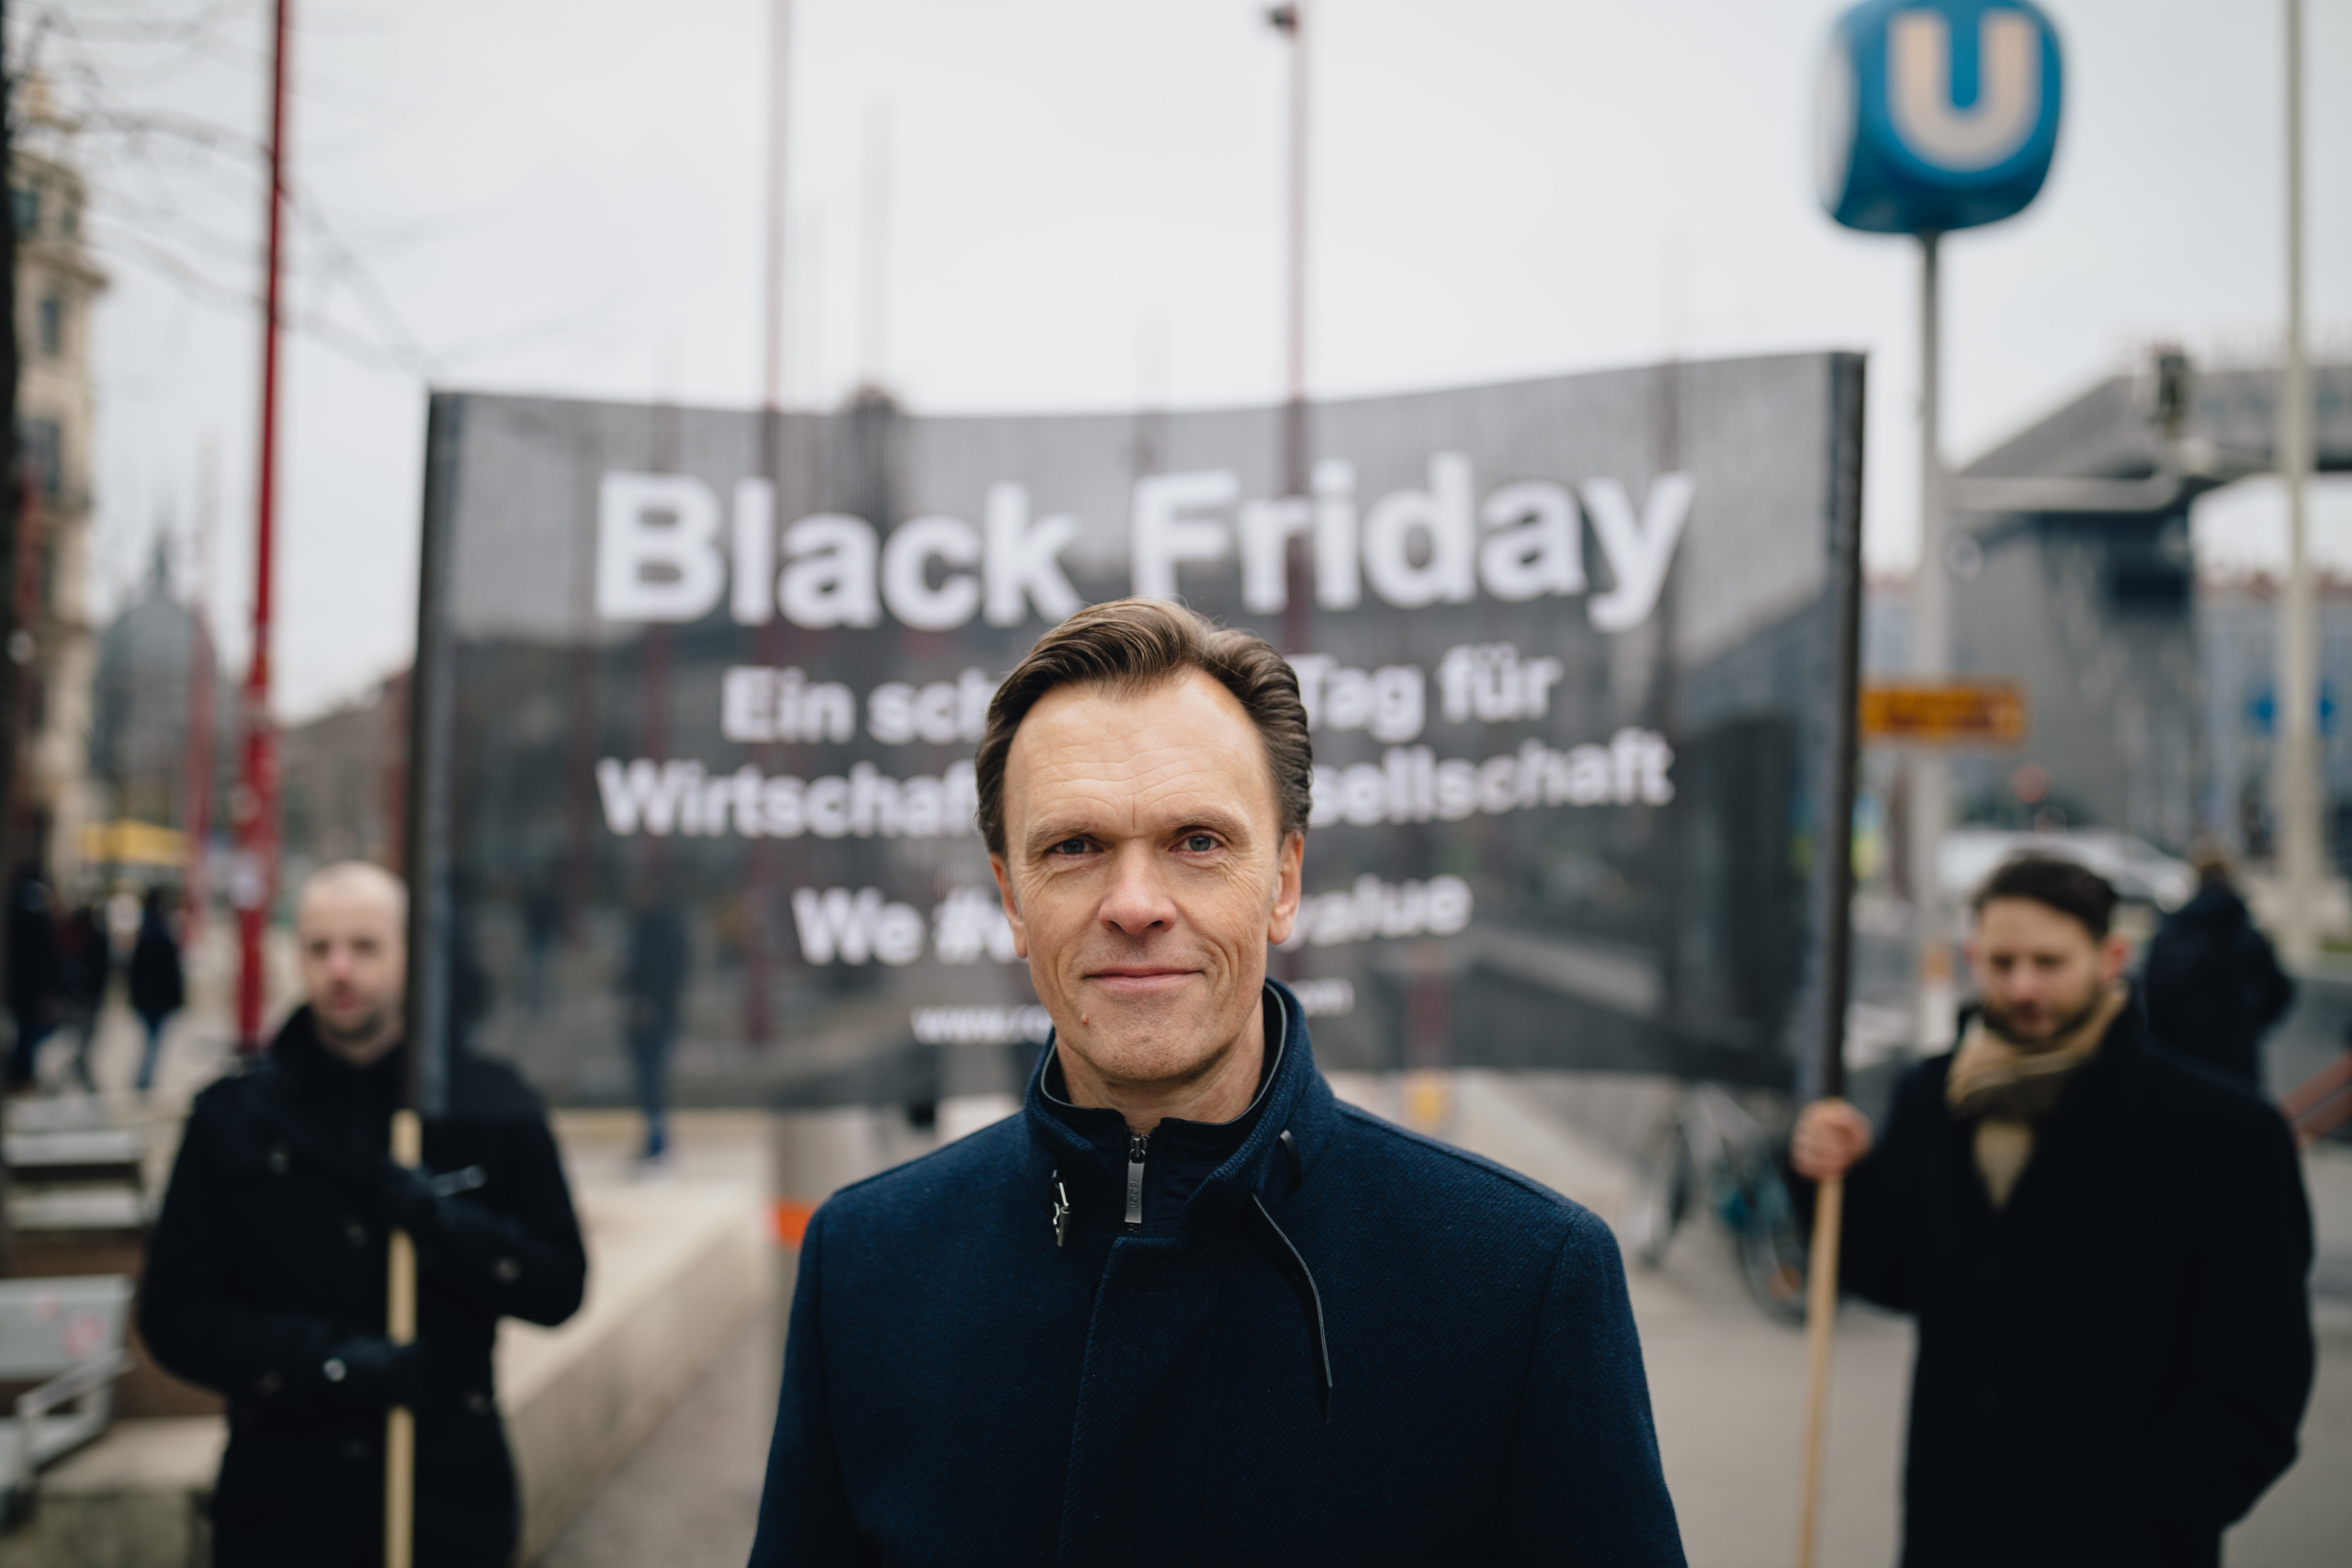 Wirtschaftsexperte Mag. Roman Kmenta - Black Friday 2018